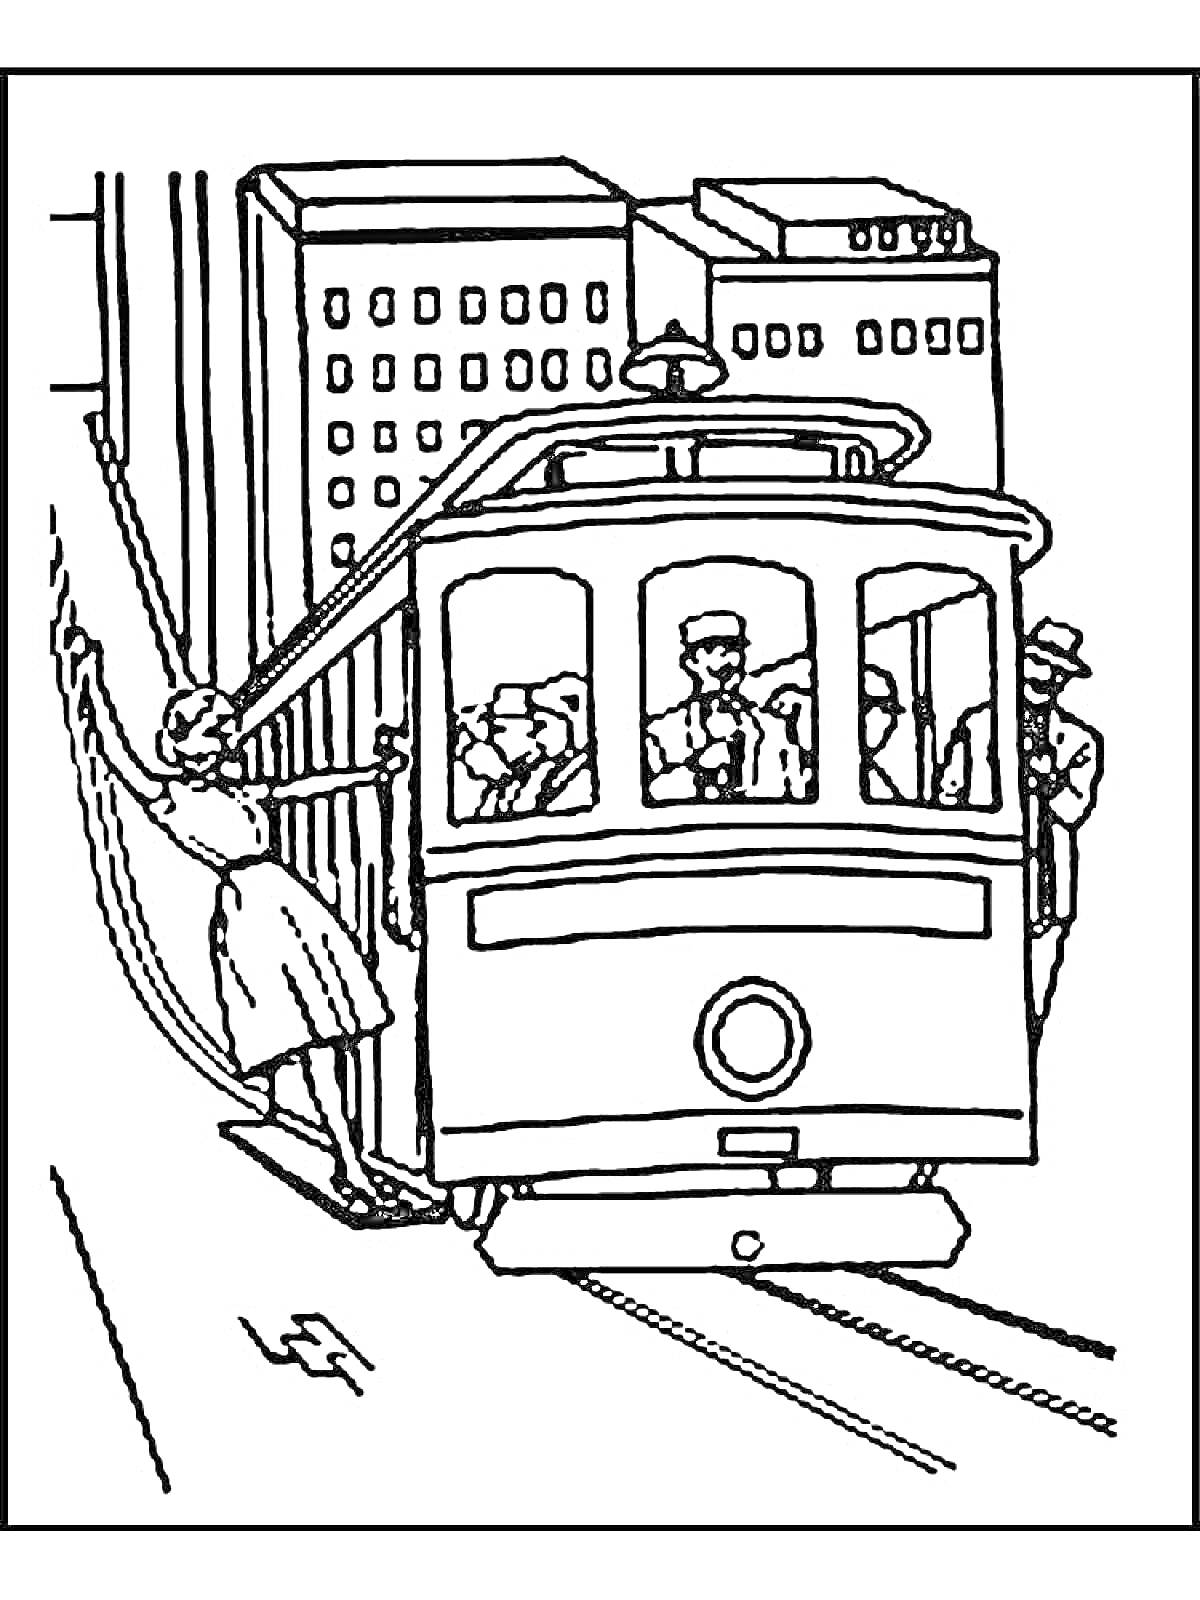 Трамвай с пассажирами и водителем на фоне многоэтажных зданий